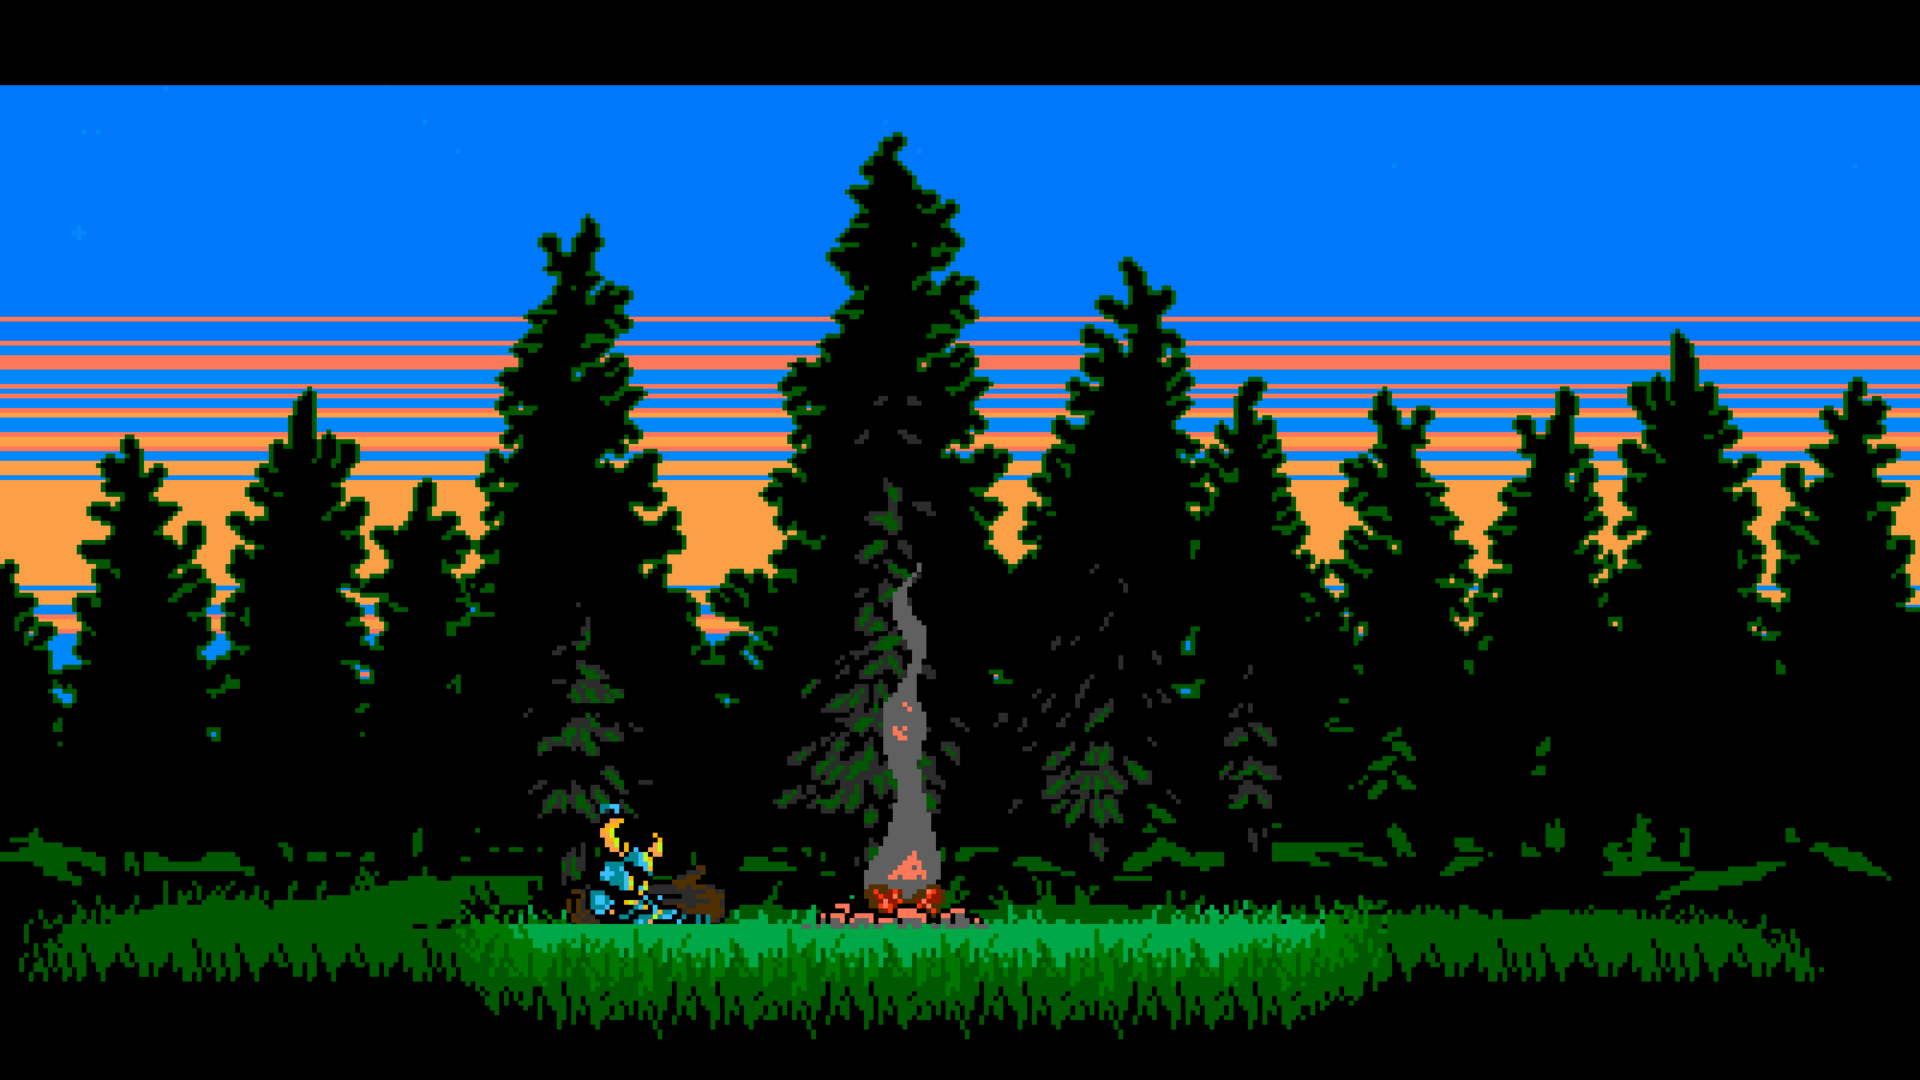 Nếu bạn là fan của trò chơi shovel knight, thì hãy không bỏ lỡ bức ảnh này! Bức ảnh về Shovel Knight Video Games Pixel Art Retro Games 8 Bit 16 Bit... sẽ giúp bạn thêm động lực để trở lại với game và tận hưởng những phút giây vui vẻ cùng nó.